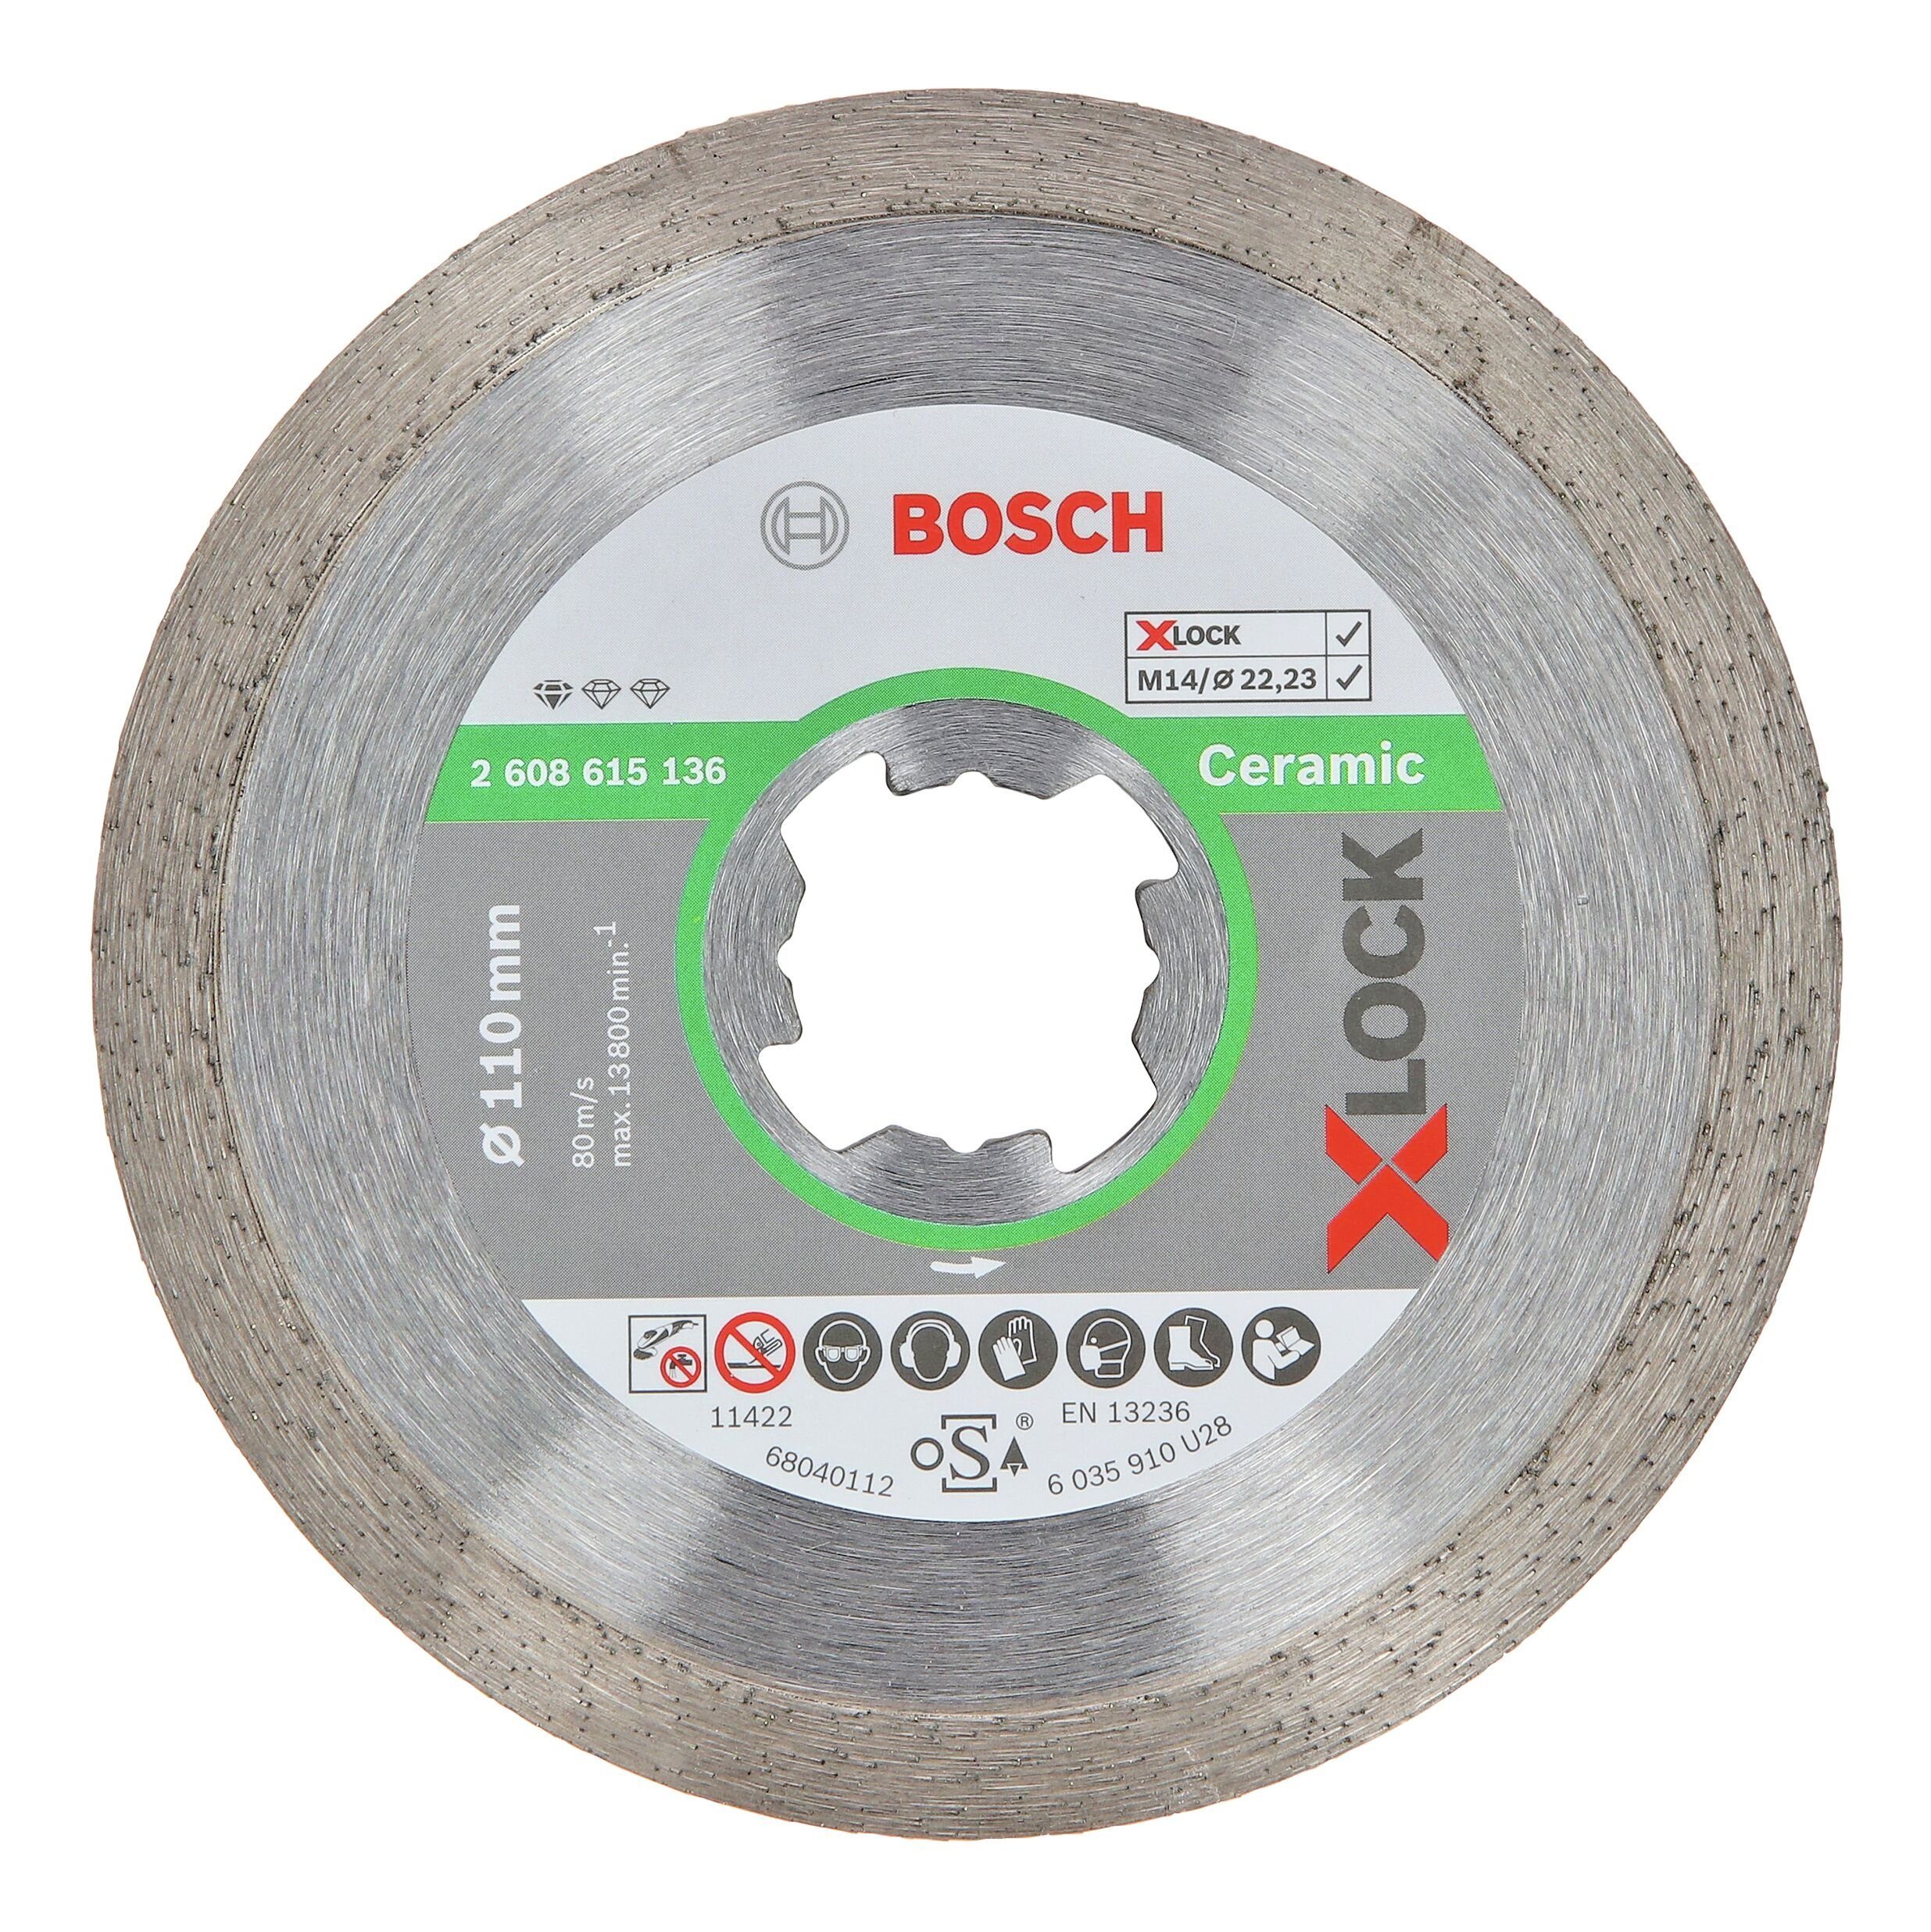 BOSCH Trennscheibe, Ø 110 mm, Standard for Ceramic Diamanttrennscheibe X- LOCK - 110 x 22,23 x 1,6